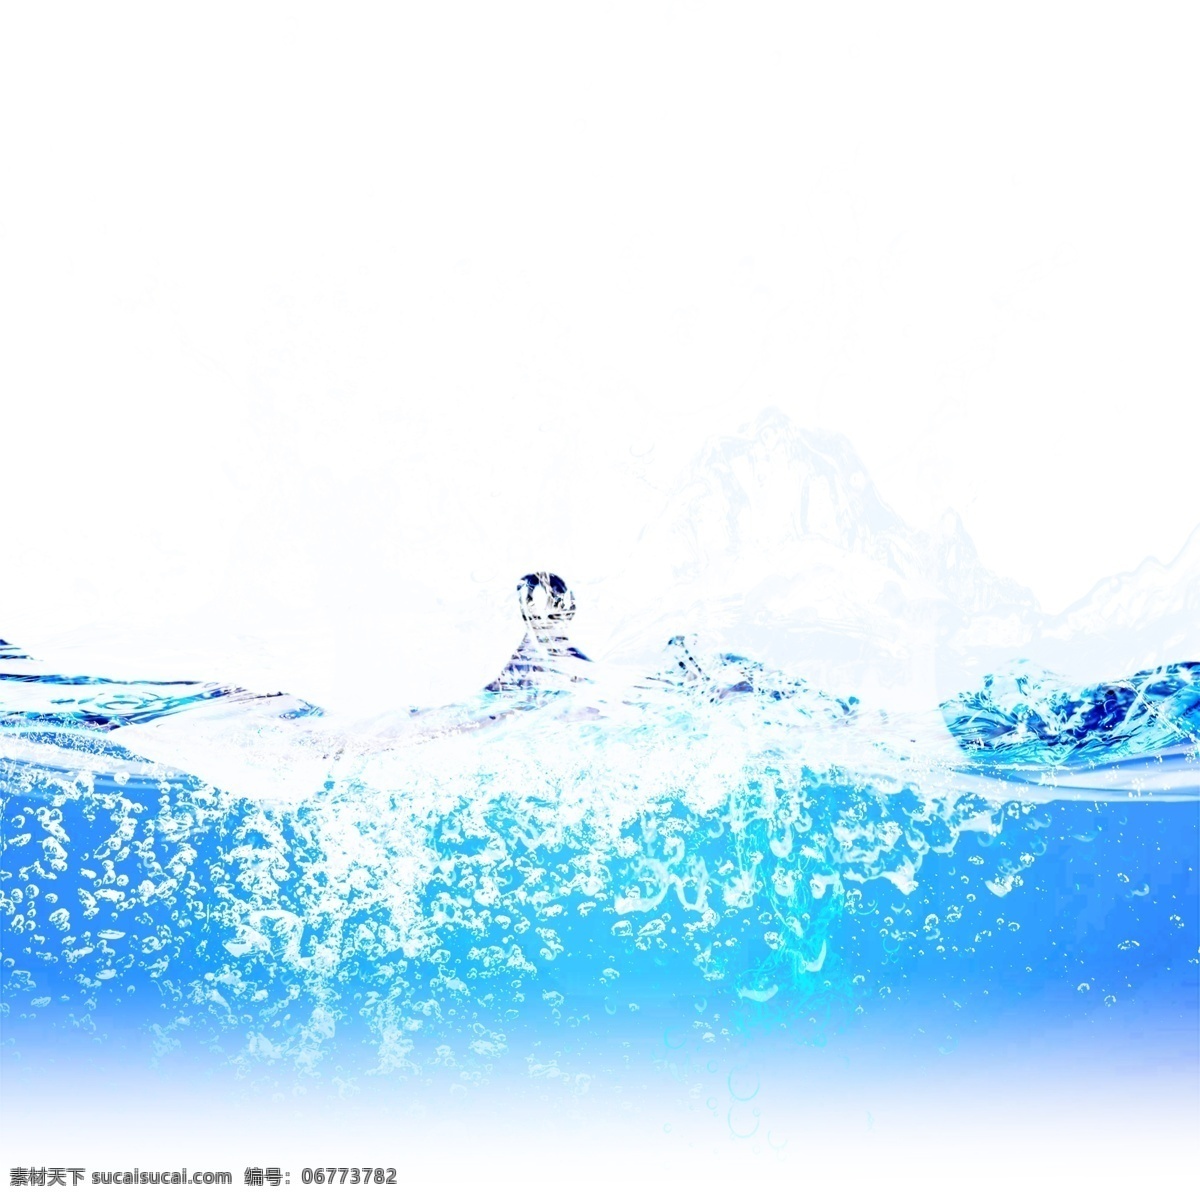 蓝色 水花 水滴 元素 蓝色水花 喷溅 动感 水珠 晶莹 透明